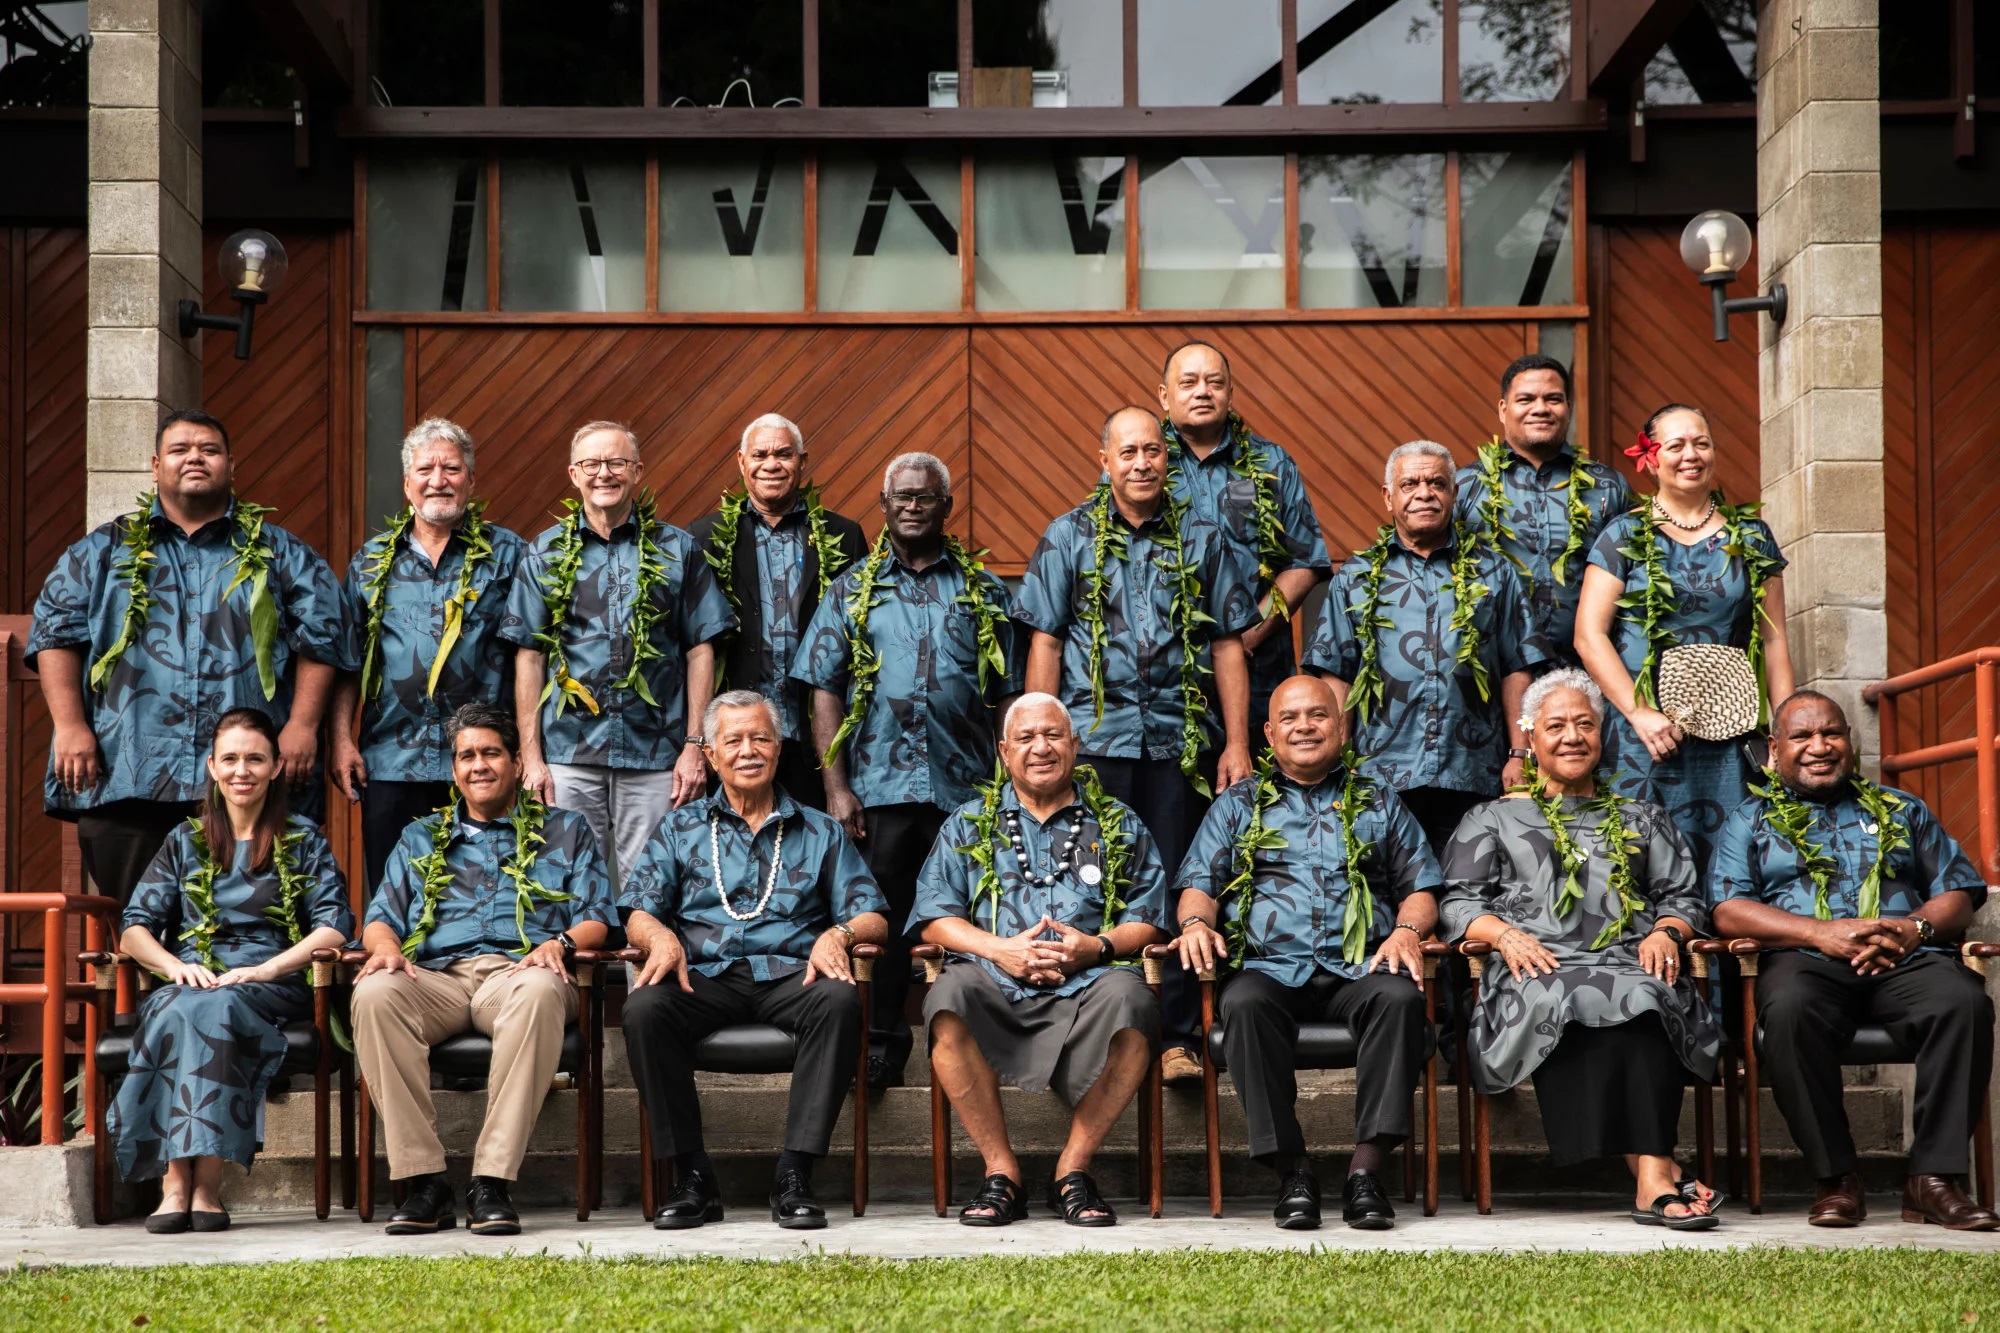 Các nhà lãnh đạo Thái Bình Dương chụp ảnh nhóm hôm 14/7 tại hội nghị thượng đỉnh các nhà lãnh đạo Diễn đàn Quốc đảo Thái Bình Dương ở Fiji. (Ảnh: AP)